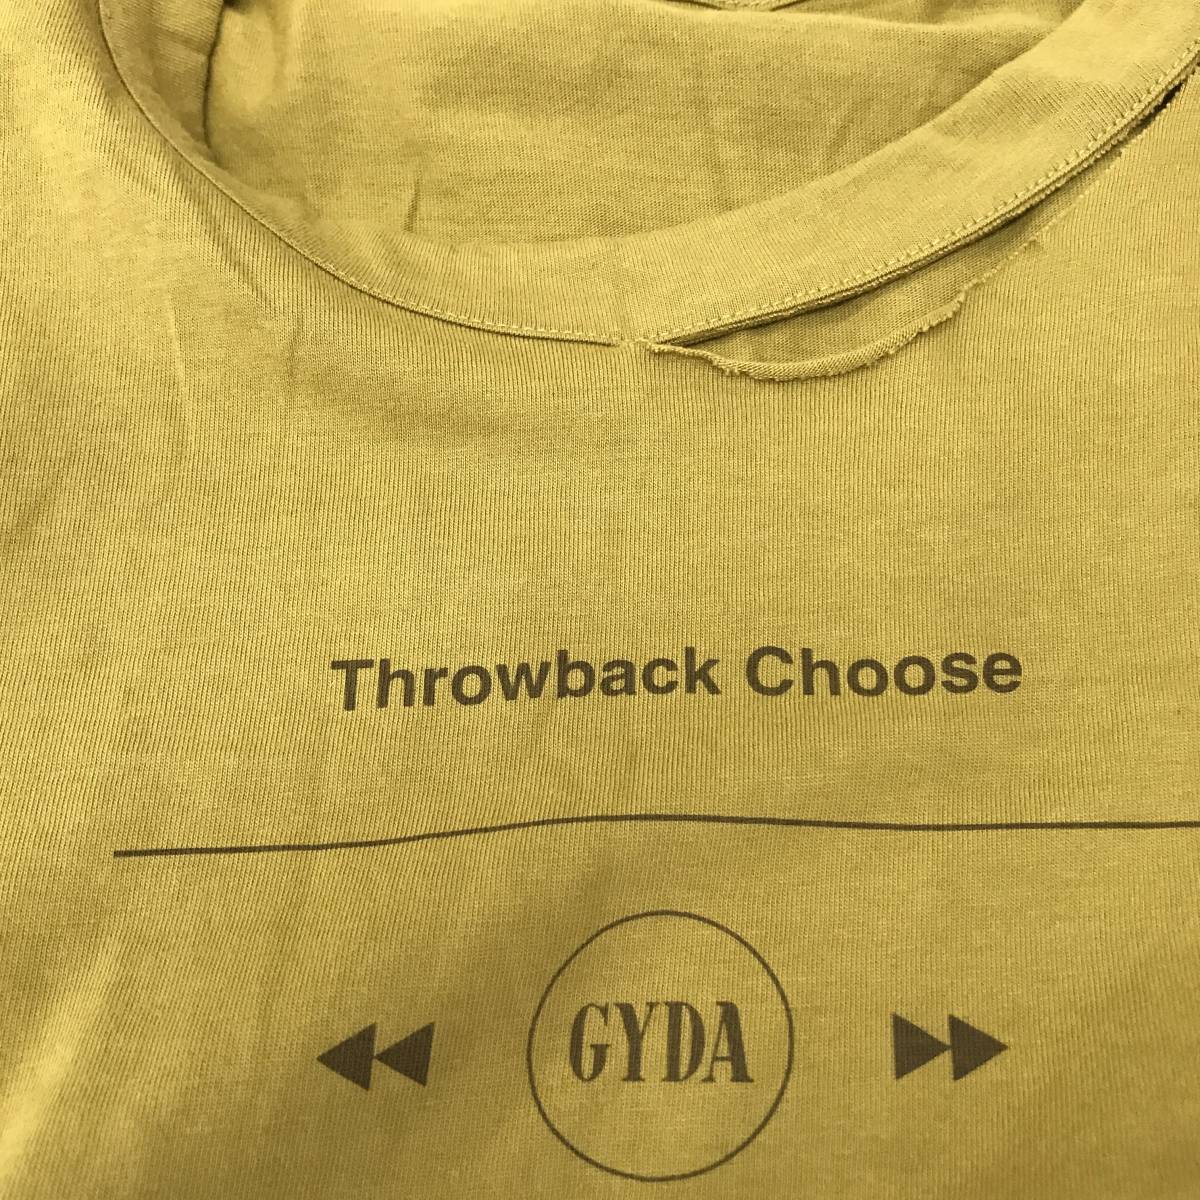 GYDA ジェイダ THROWBACK CHOOSE CUT Tシャツ Fサイズ マスタード S8-49  USED(文字、ロゴ)｜売買されたオークション情報、ヤフオク! の商品情報をアーカイブ公開